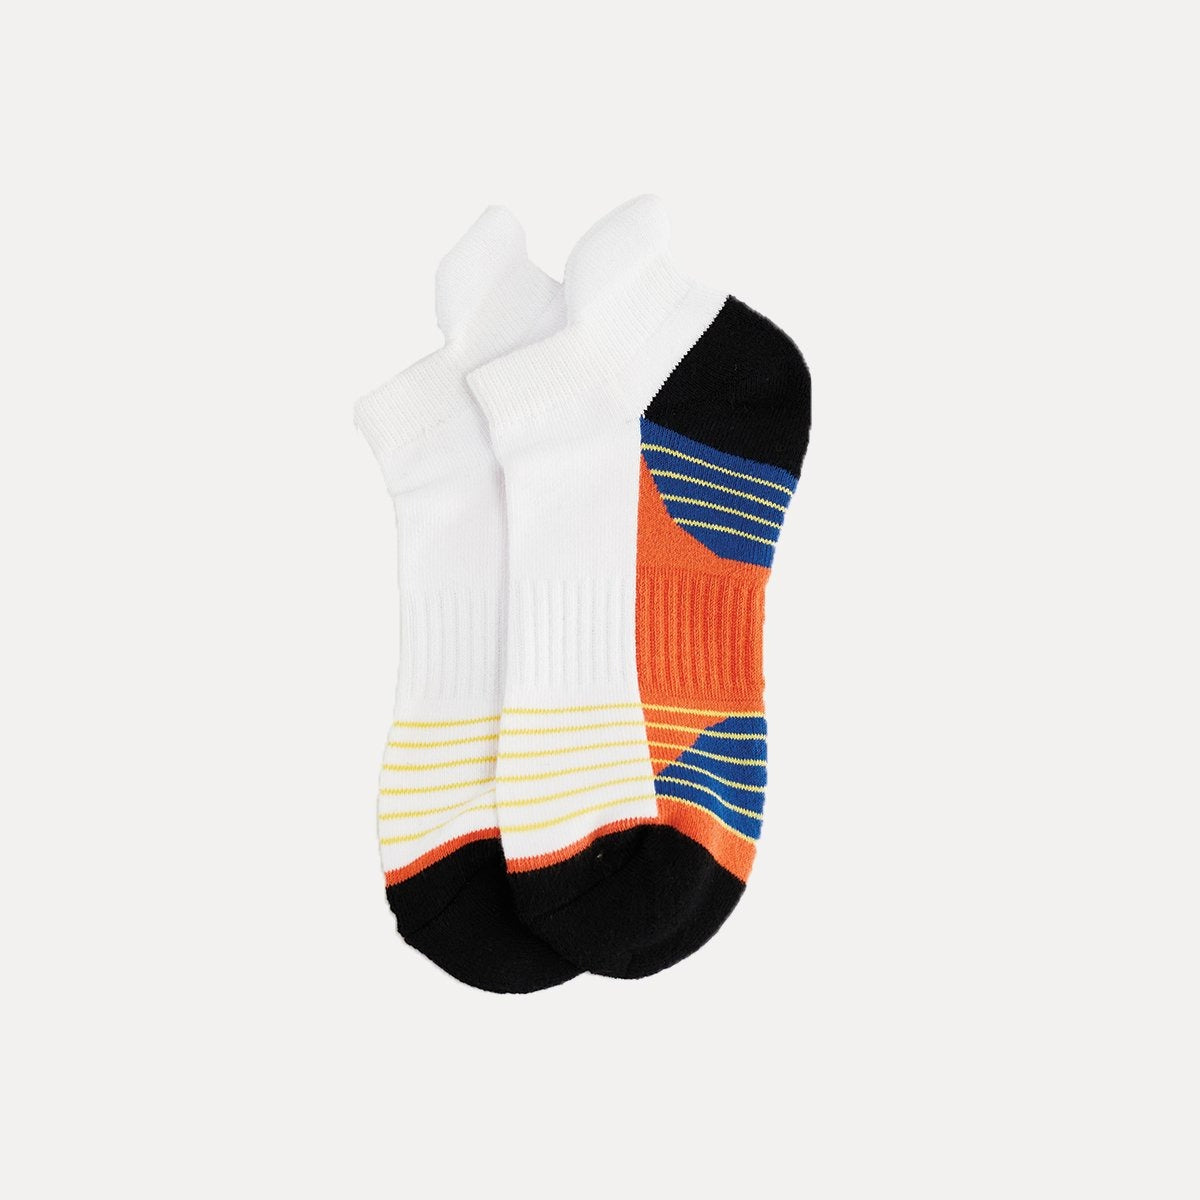 SOCKIC | Ankle Socks - White Orange